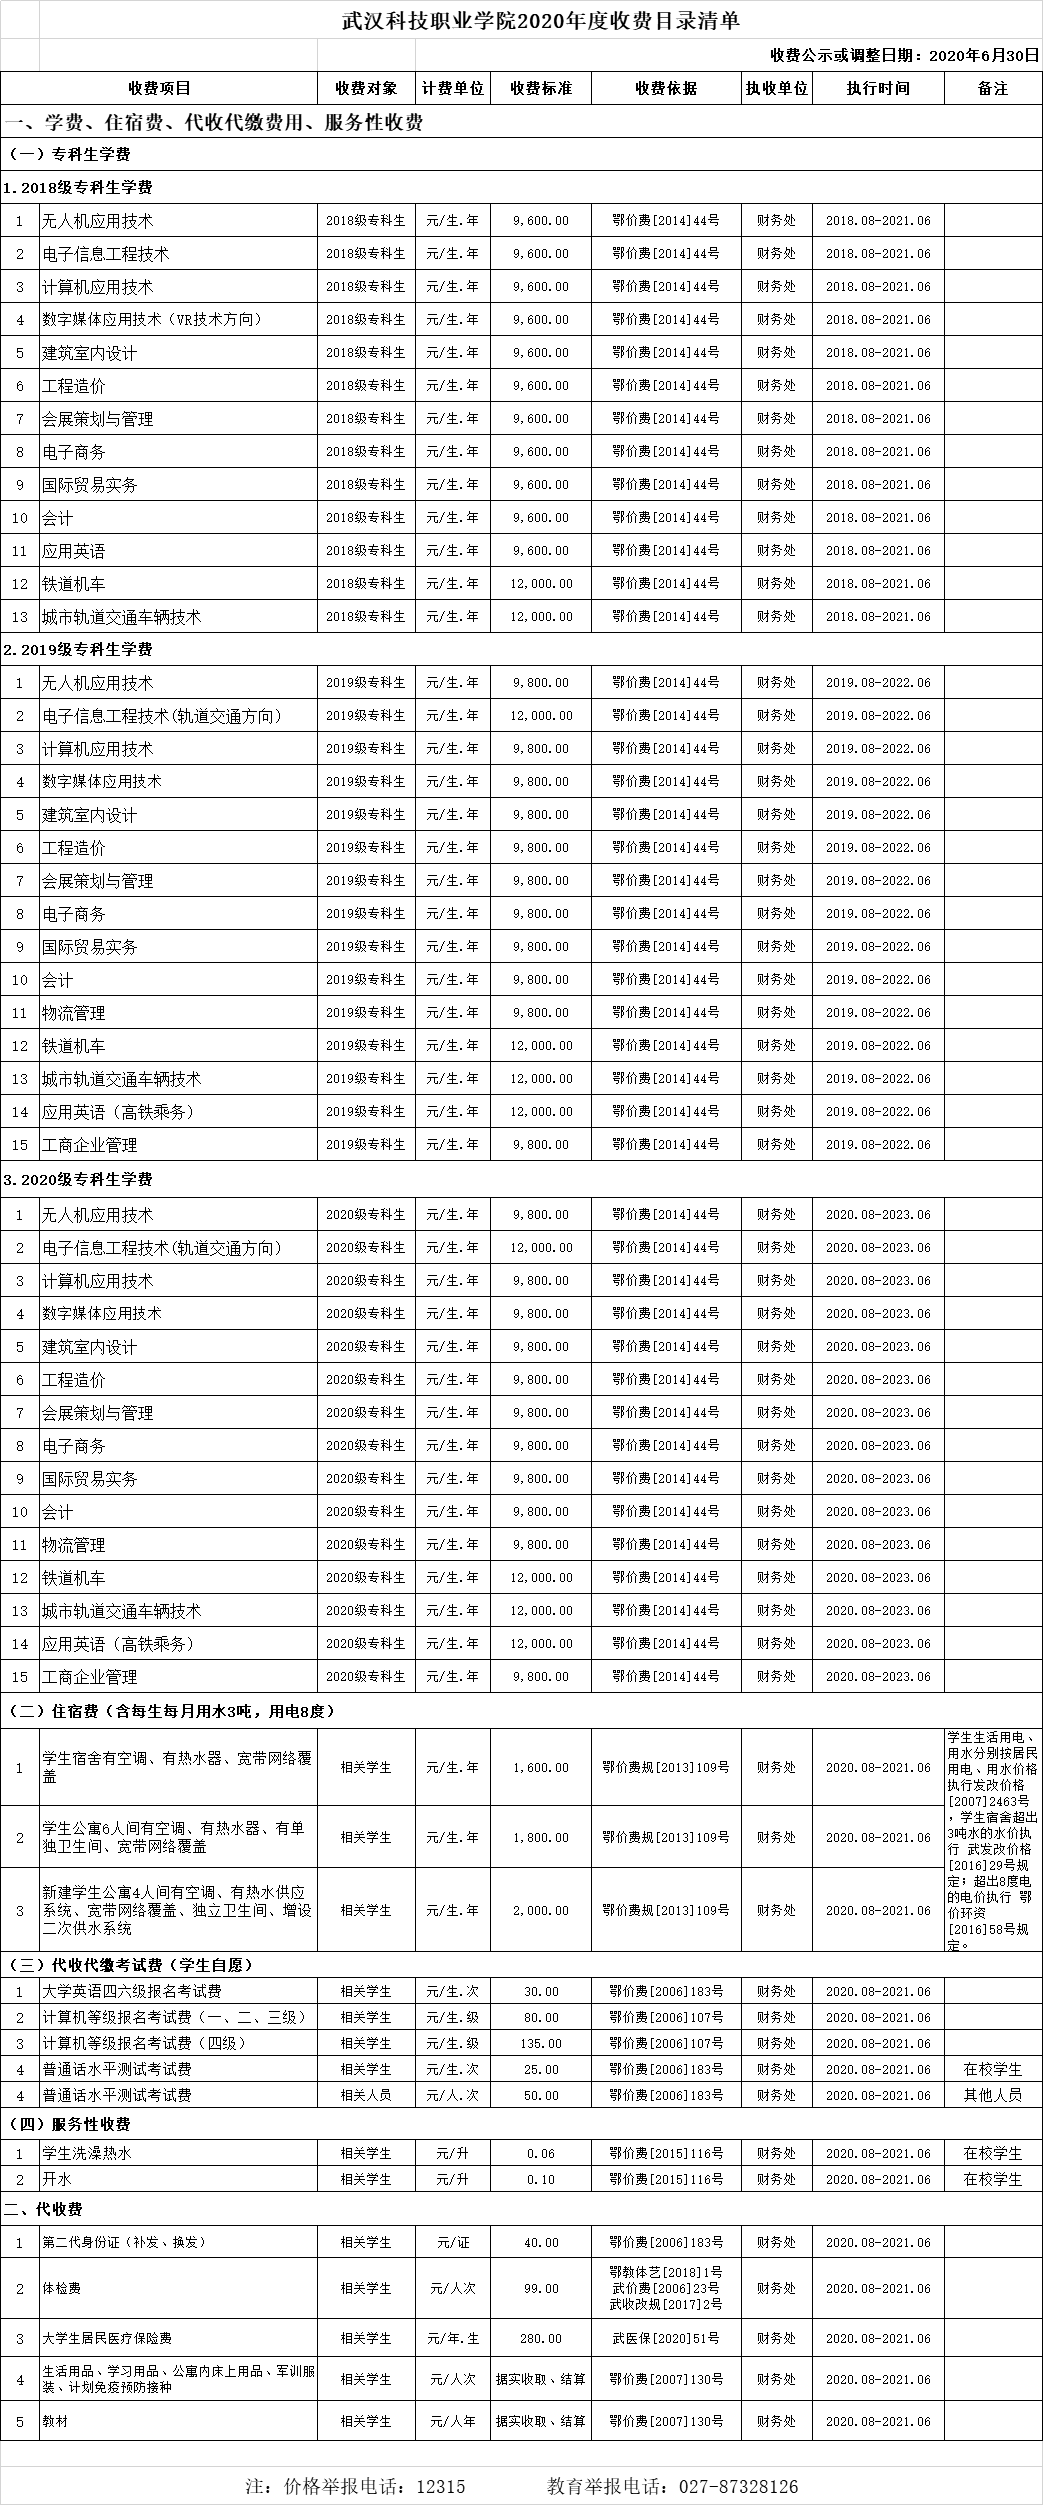 武汉科技职业学院2020年收费目录清单 